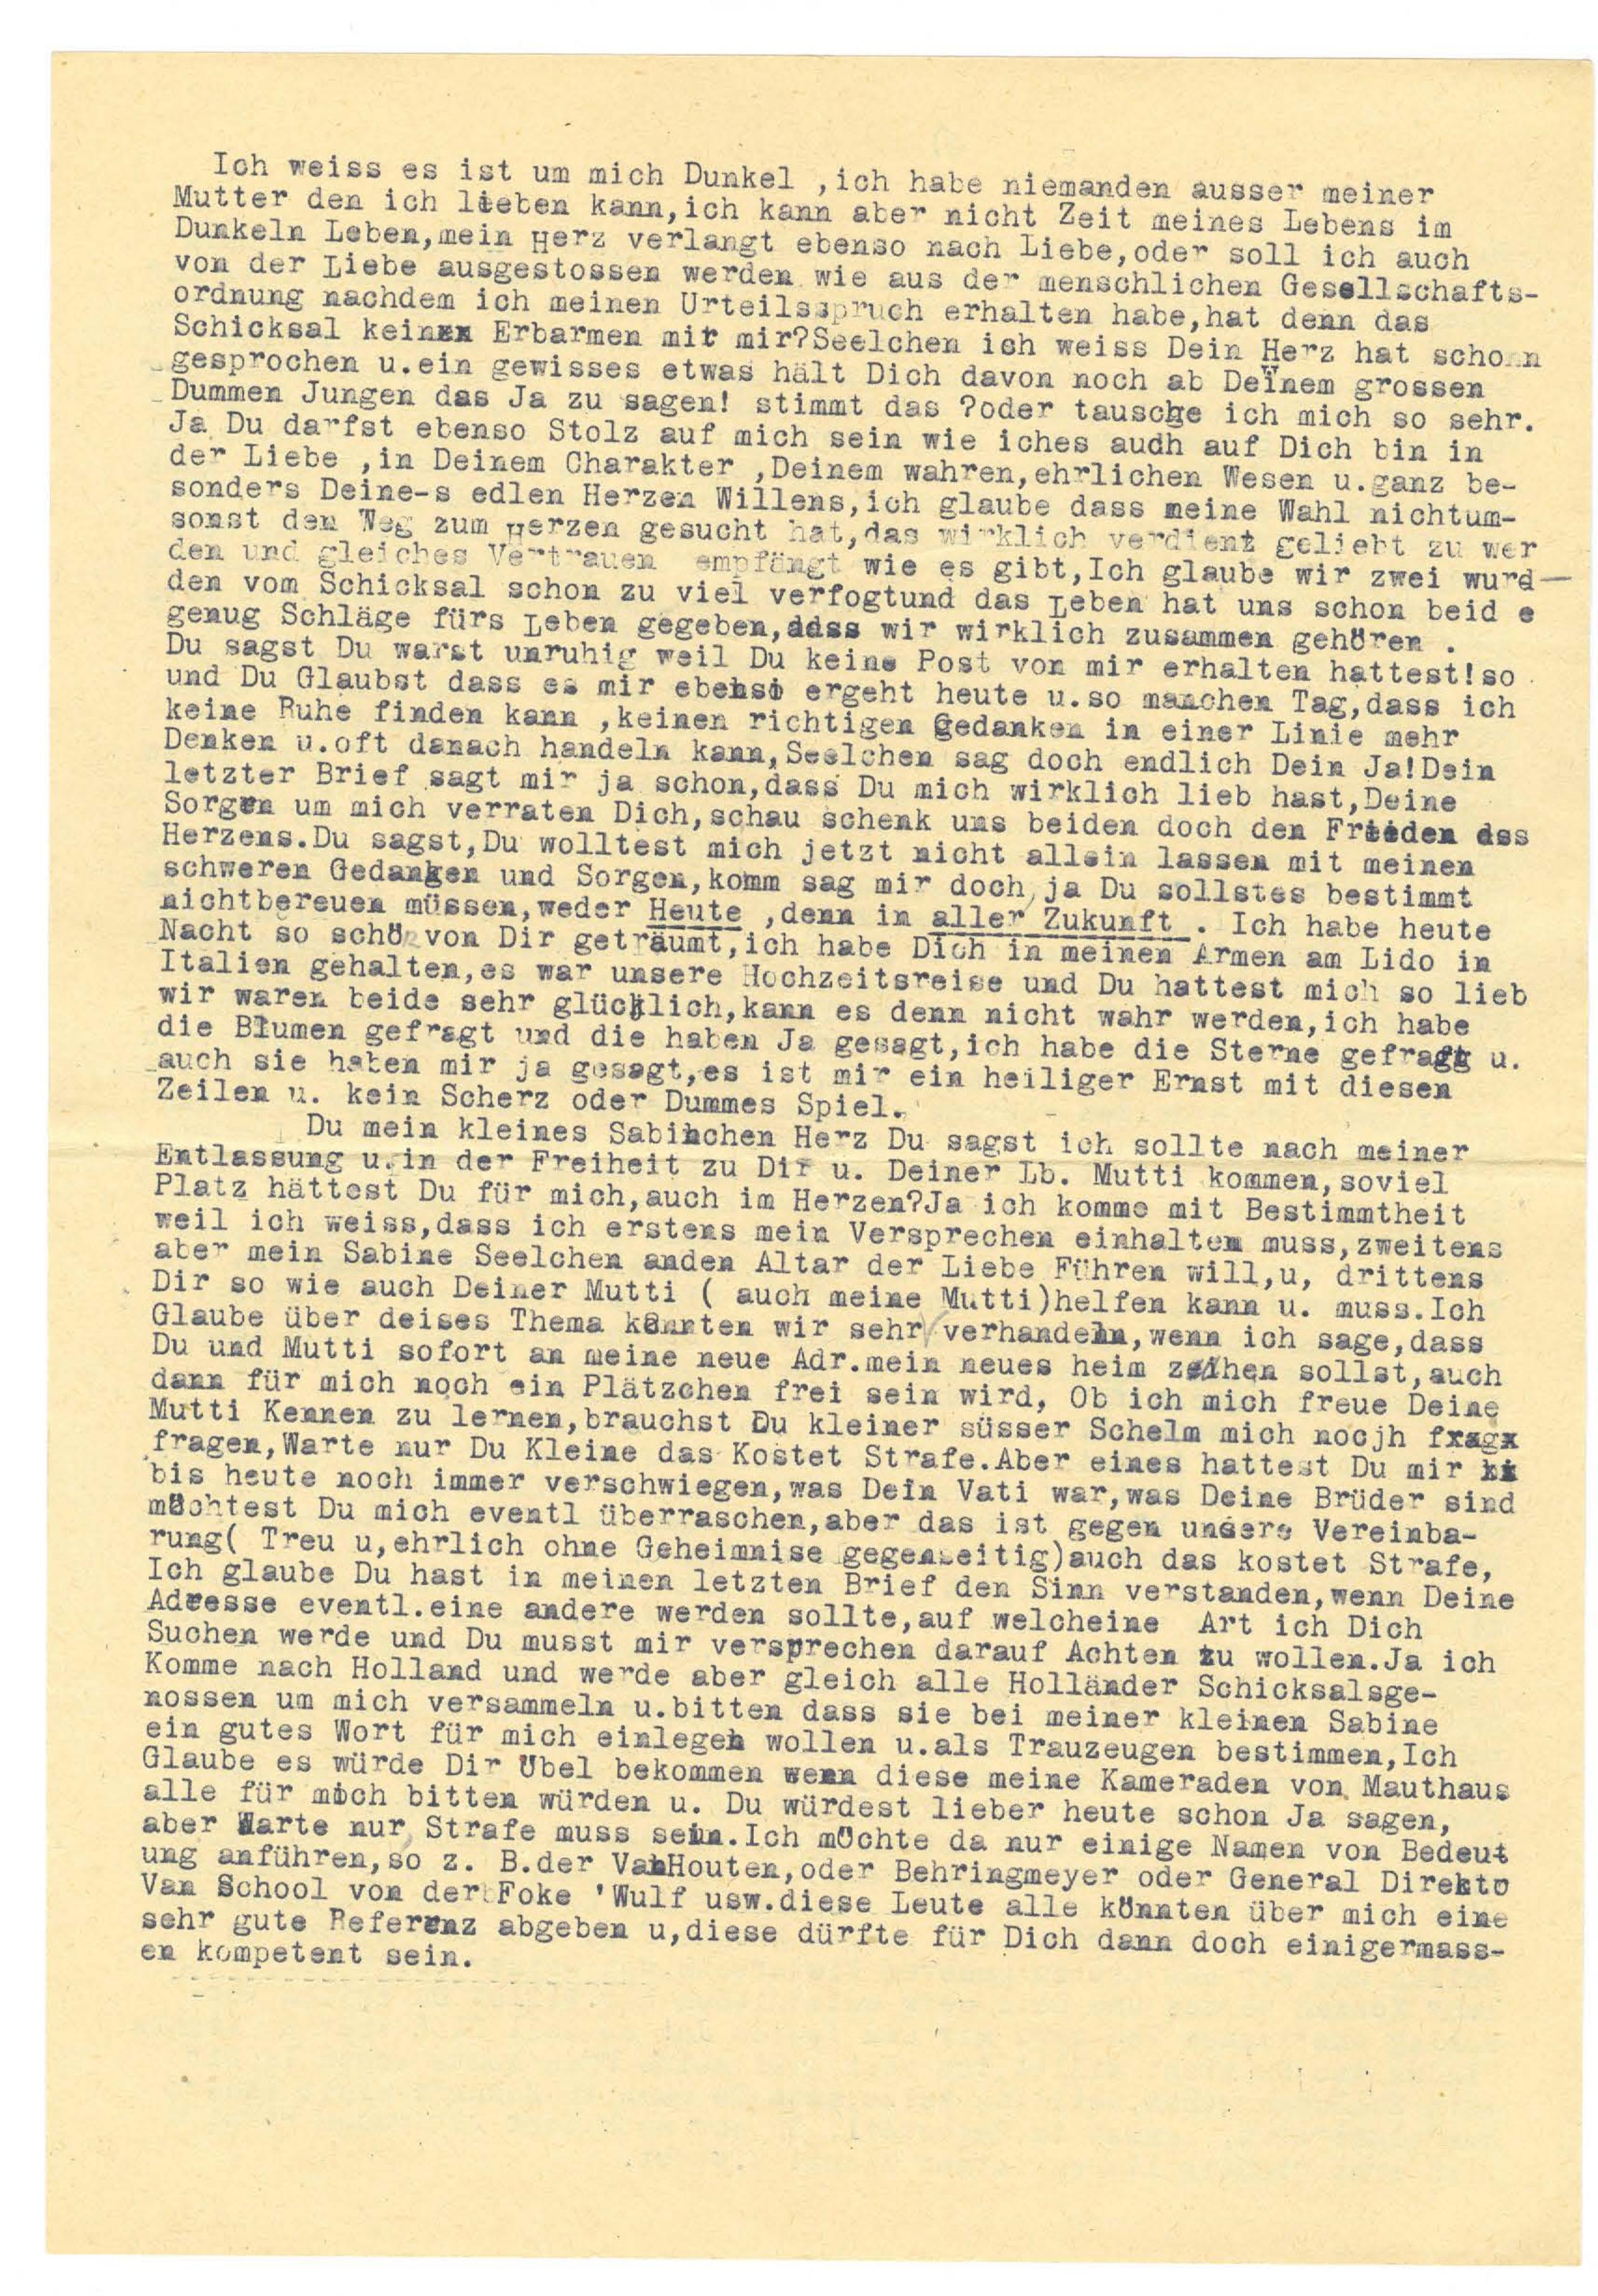 Fragment uit een brief van Gebele aan Sabine op 8 april 1943.